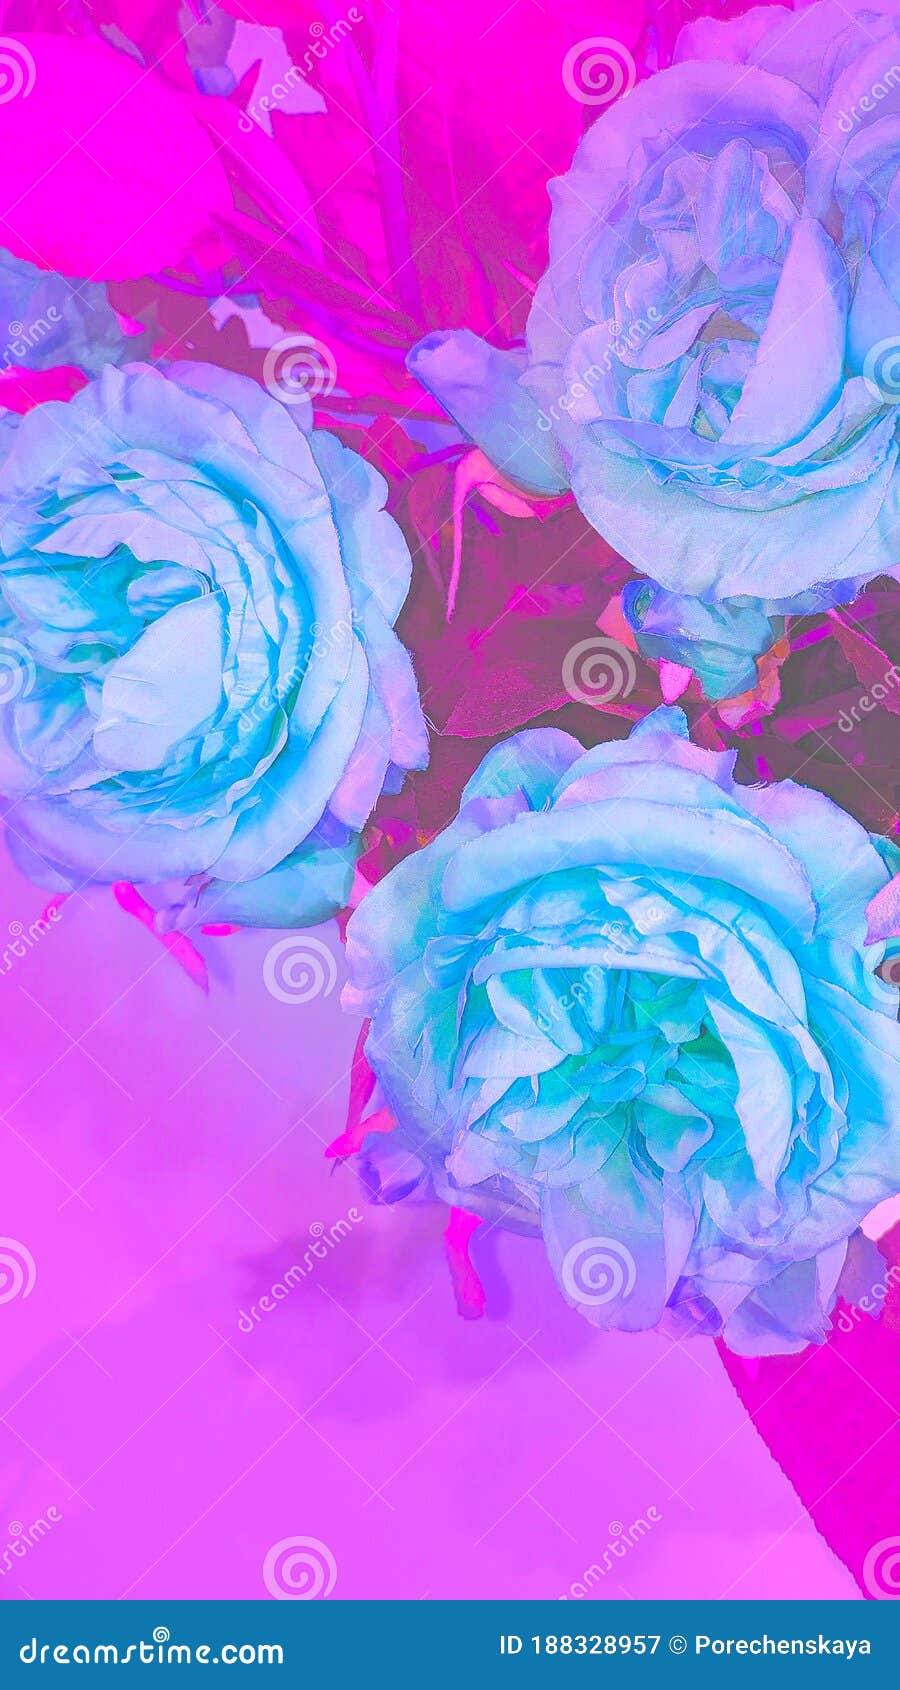 Hình nền hoa hồng neon tạo nên một không gian sống động, đầy sức sống và rực rỡ. Bạn sẽ không muốn bỏ lỡ cơ hội để chiêm ngưỡng những bông hoa này sáng chói trên nền neon tuyệt đẹp.